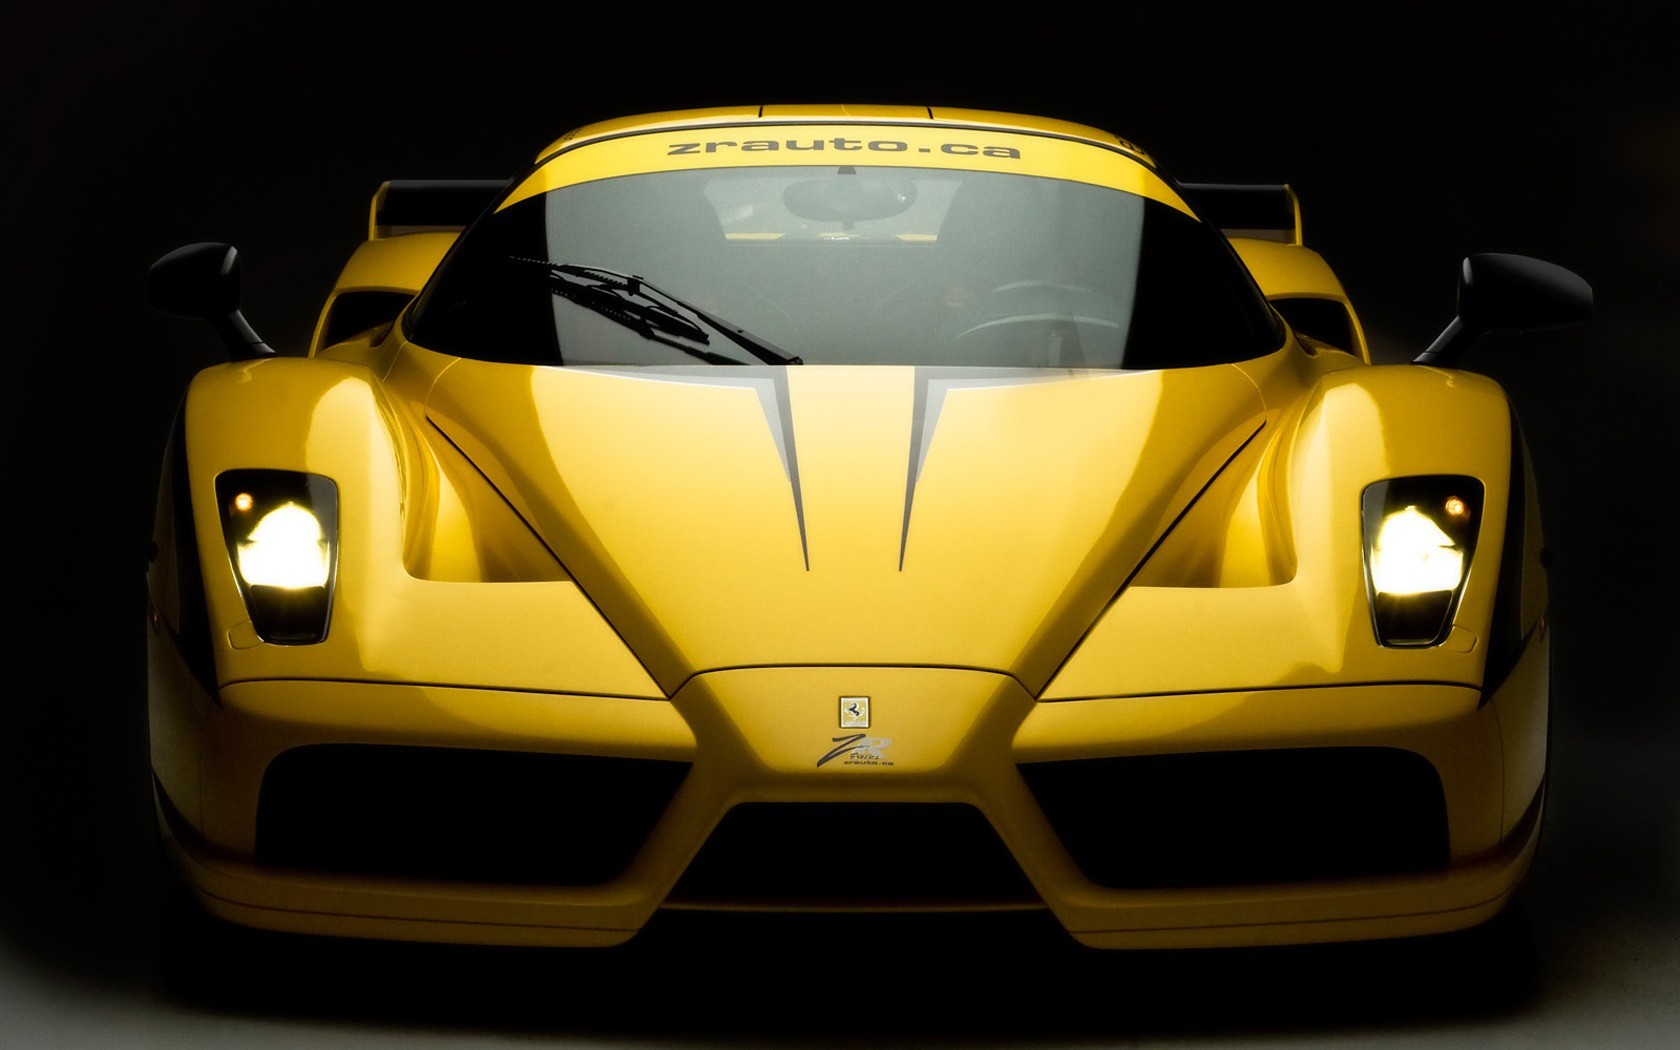 General 1680x1050 Enzo Ferrari Ferrari yellow cars vehicle car yellow italian cars Stellantis